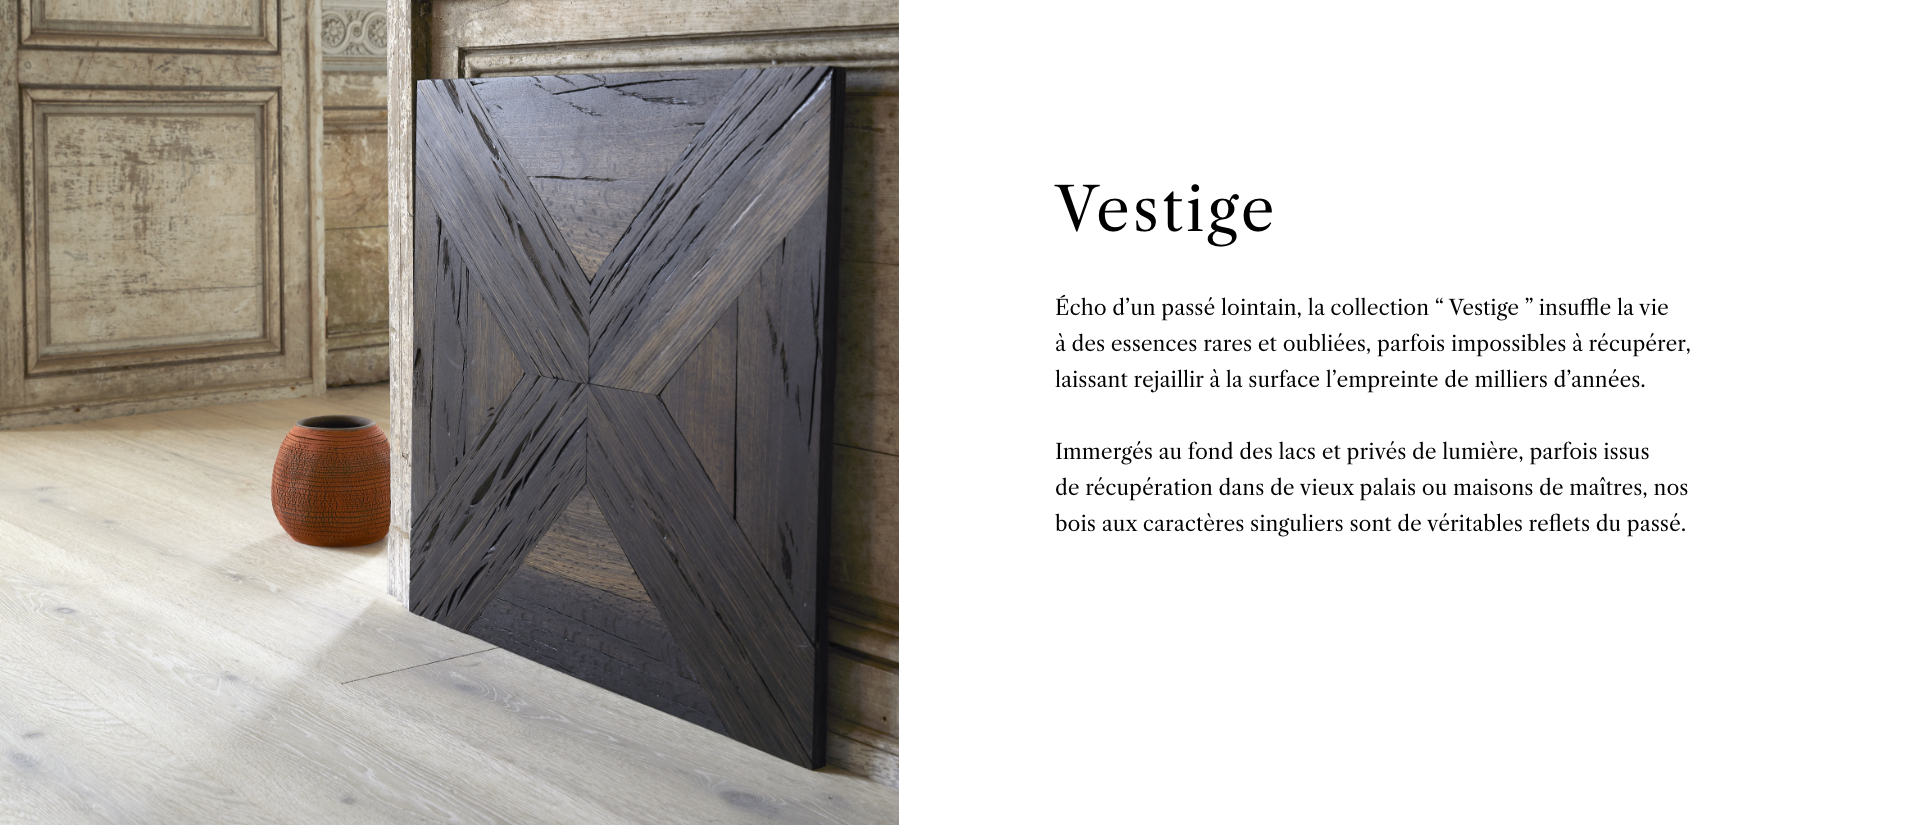 Collection Vestige - Description